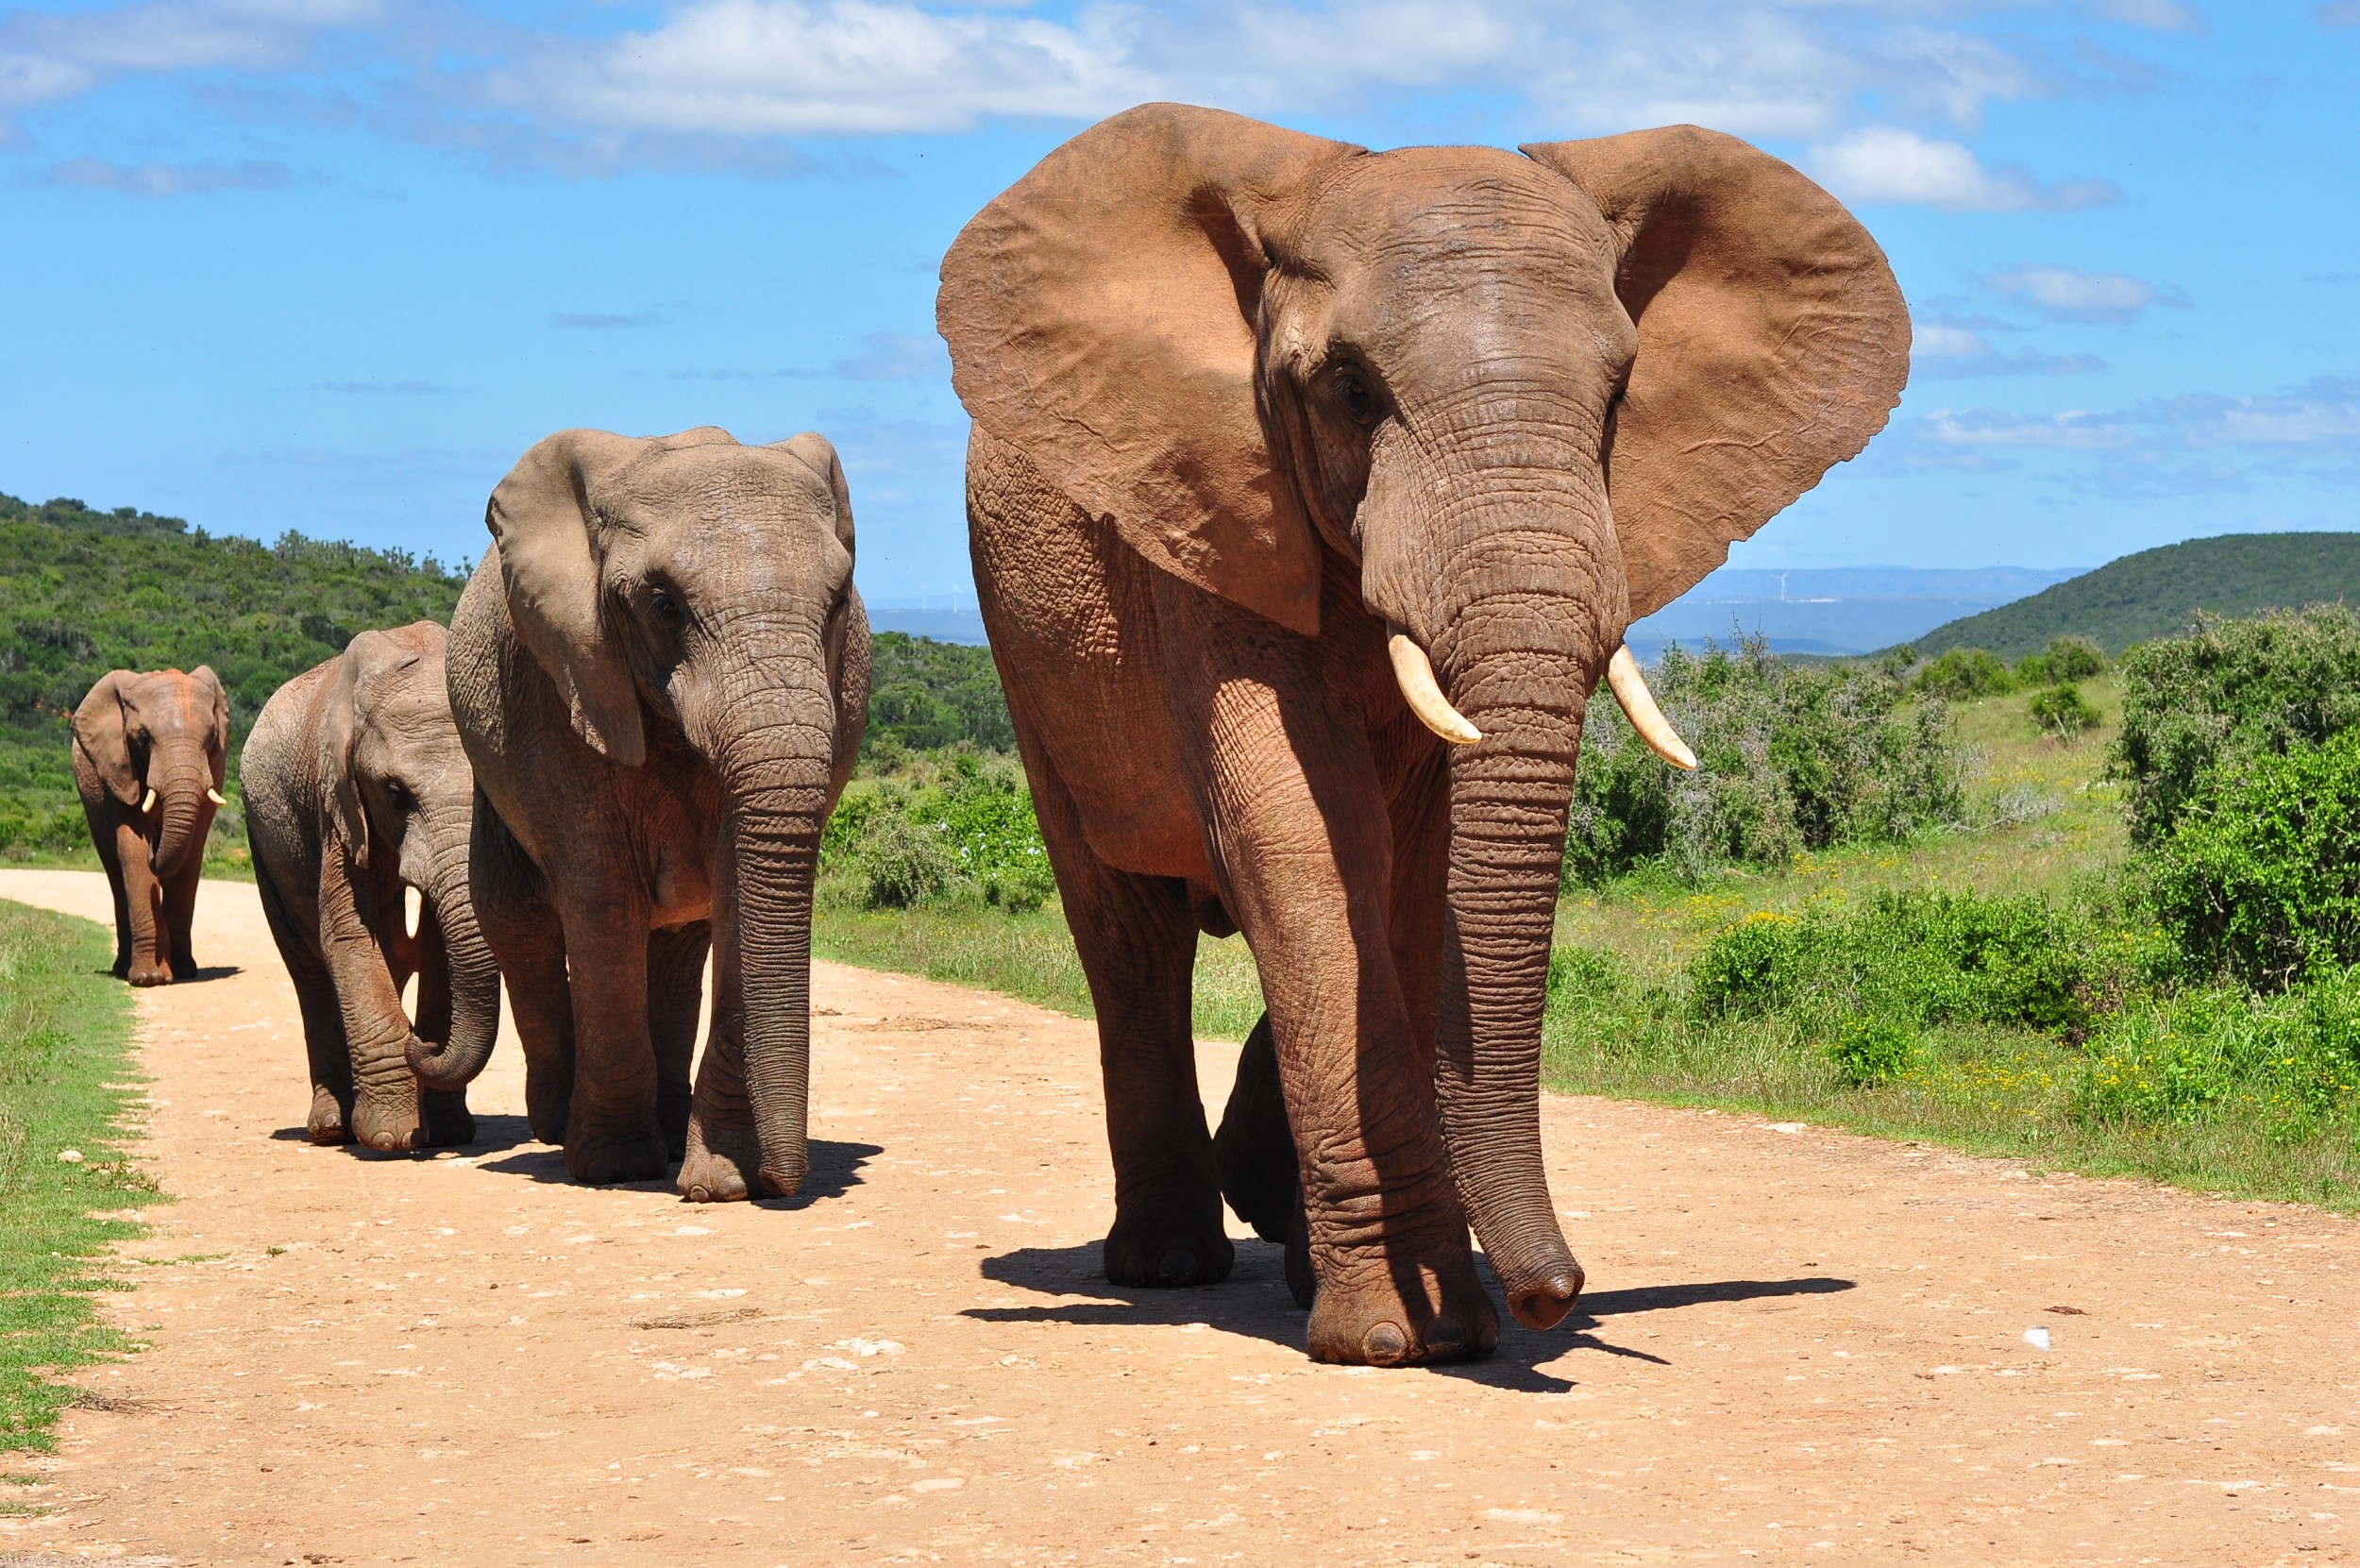 Elefantes da China que caminharam 500 km fazem trajeto de volta a reserva